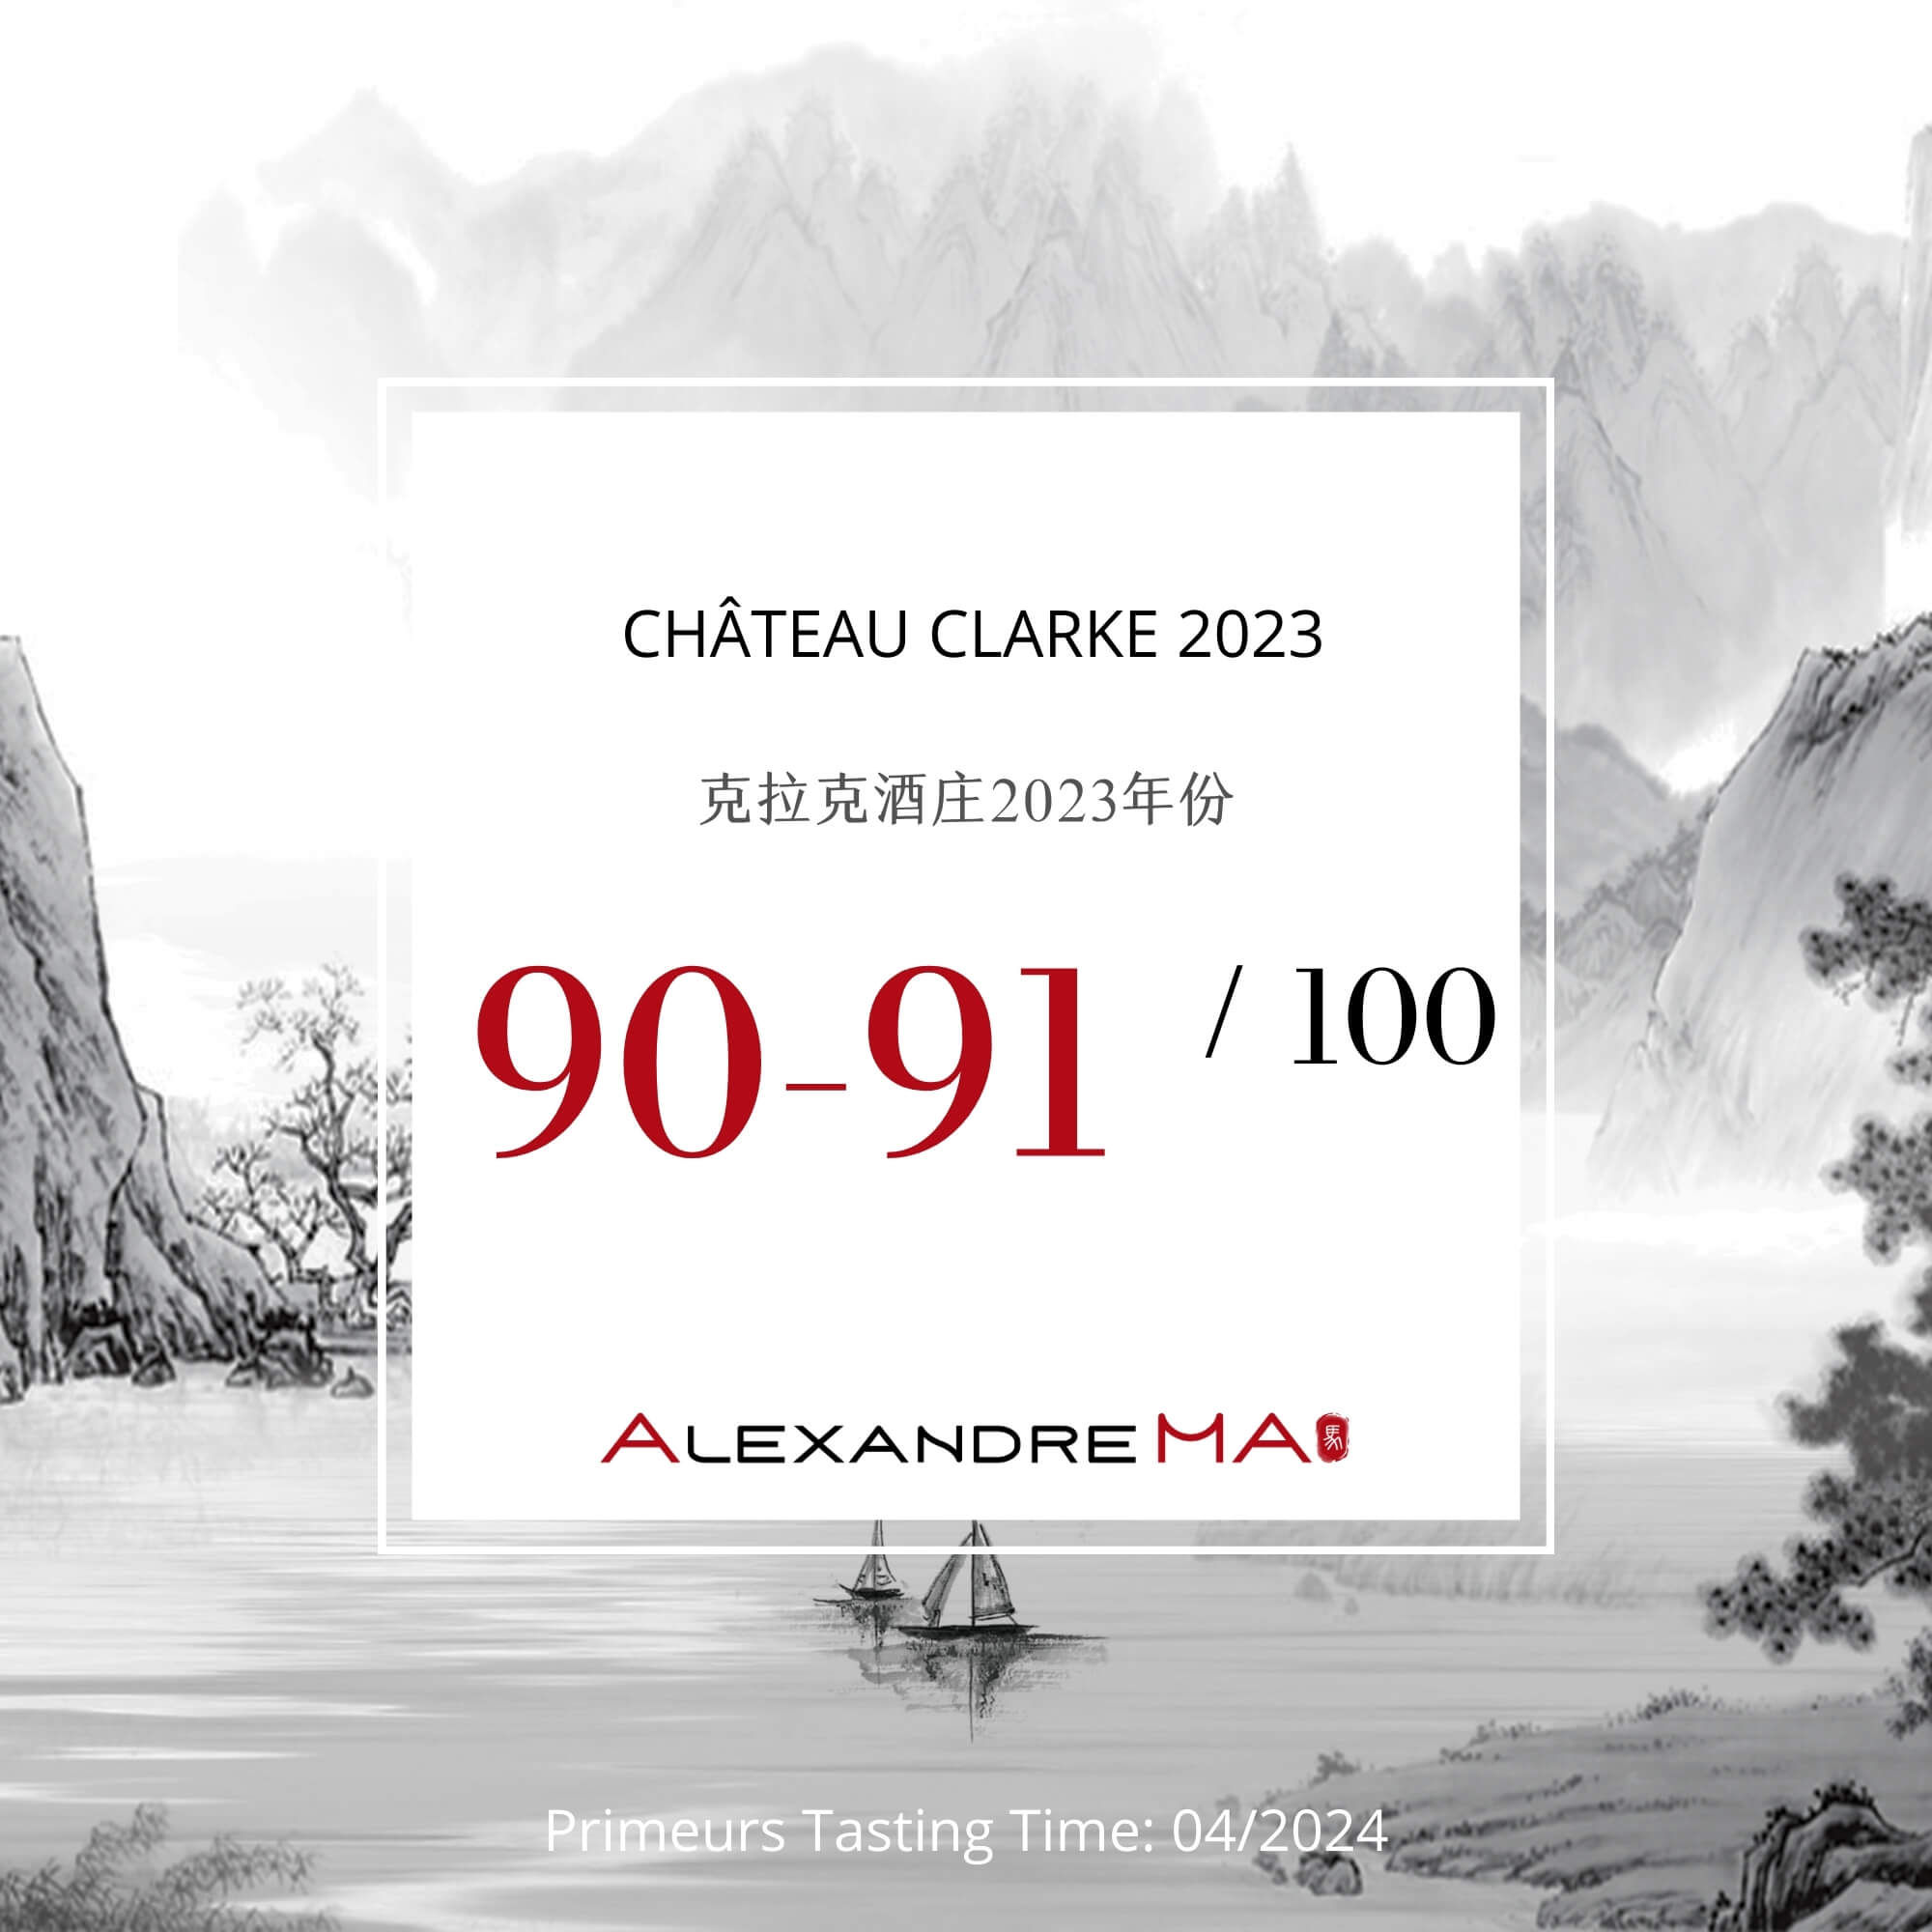 Château Clarke 2023 Primeurs - Alexandre MA